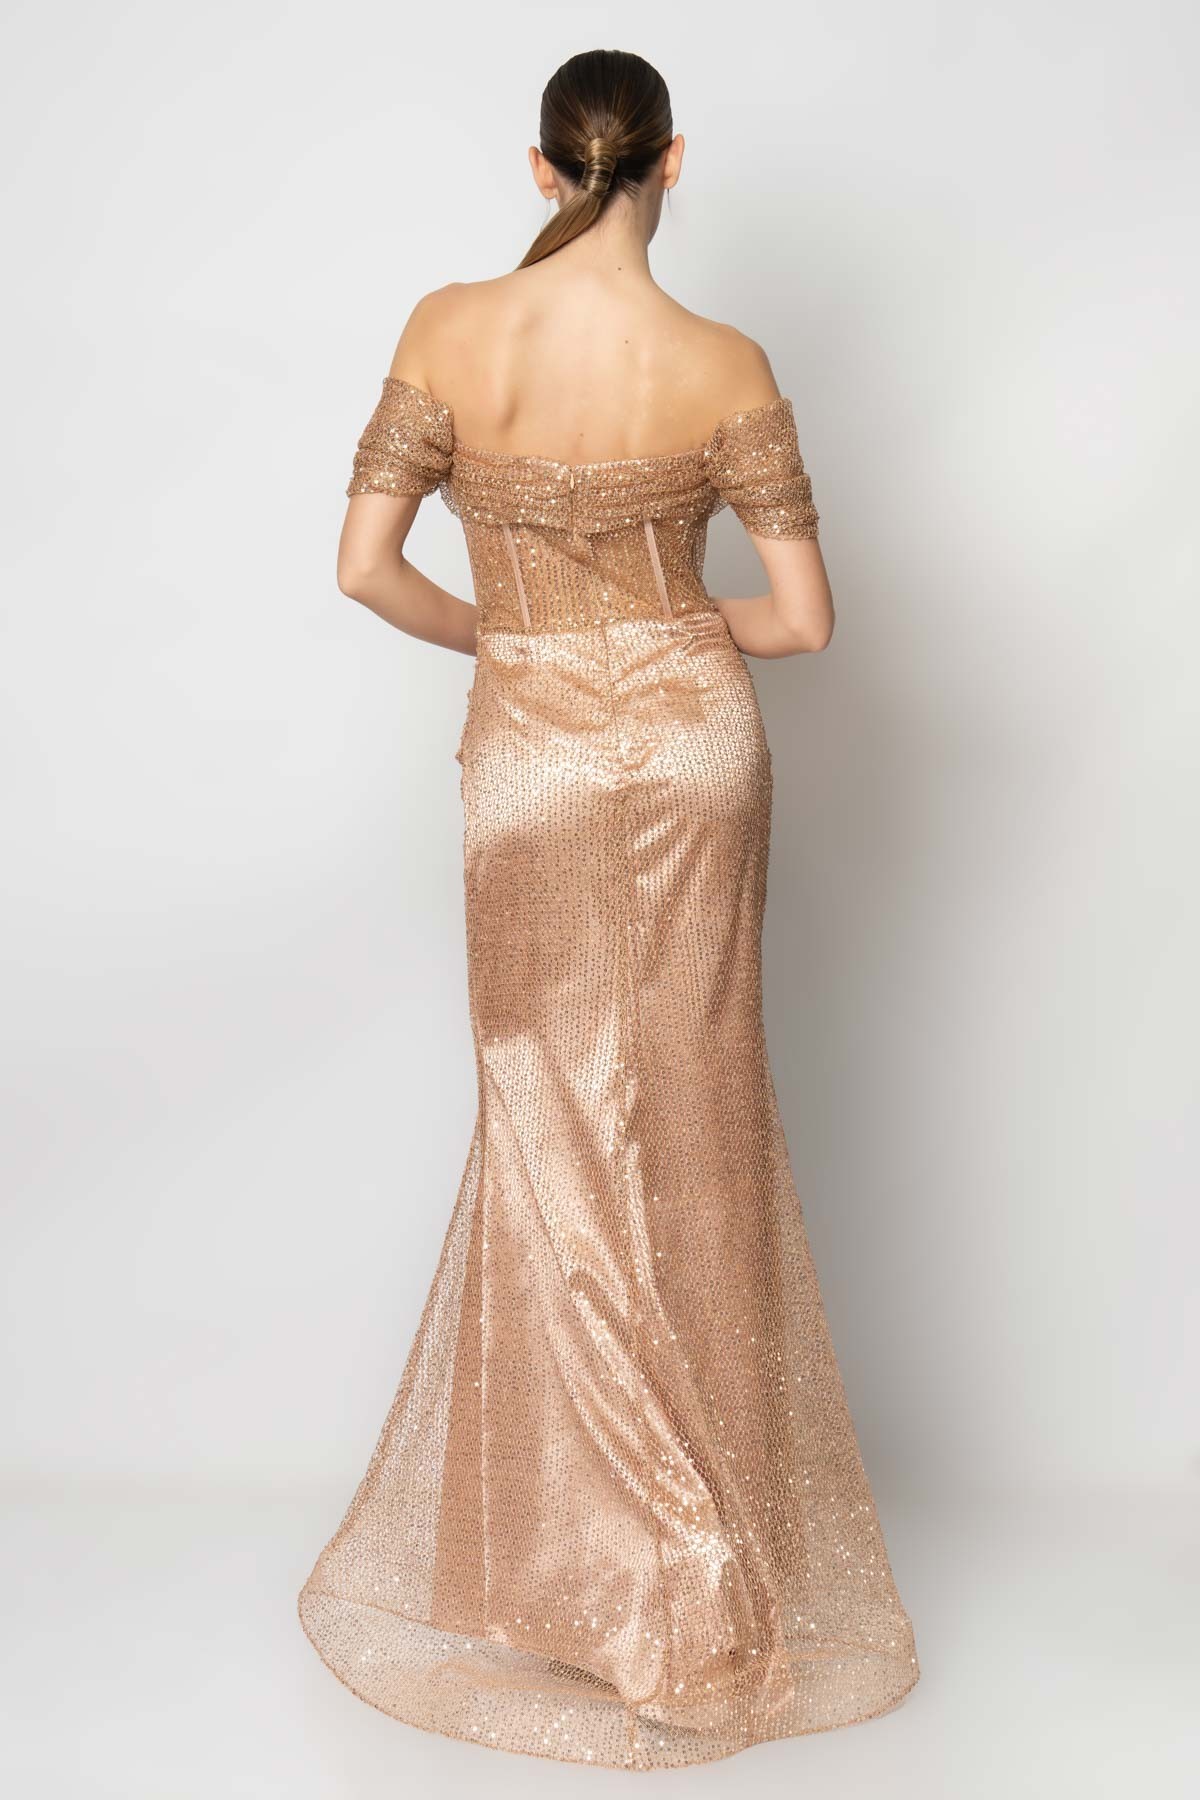 Göğsü balenli pileli beli transparan file payet abiye elbise - Gold